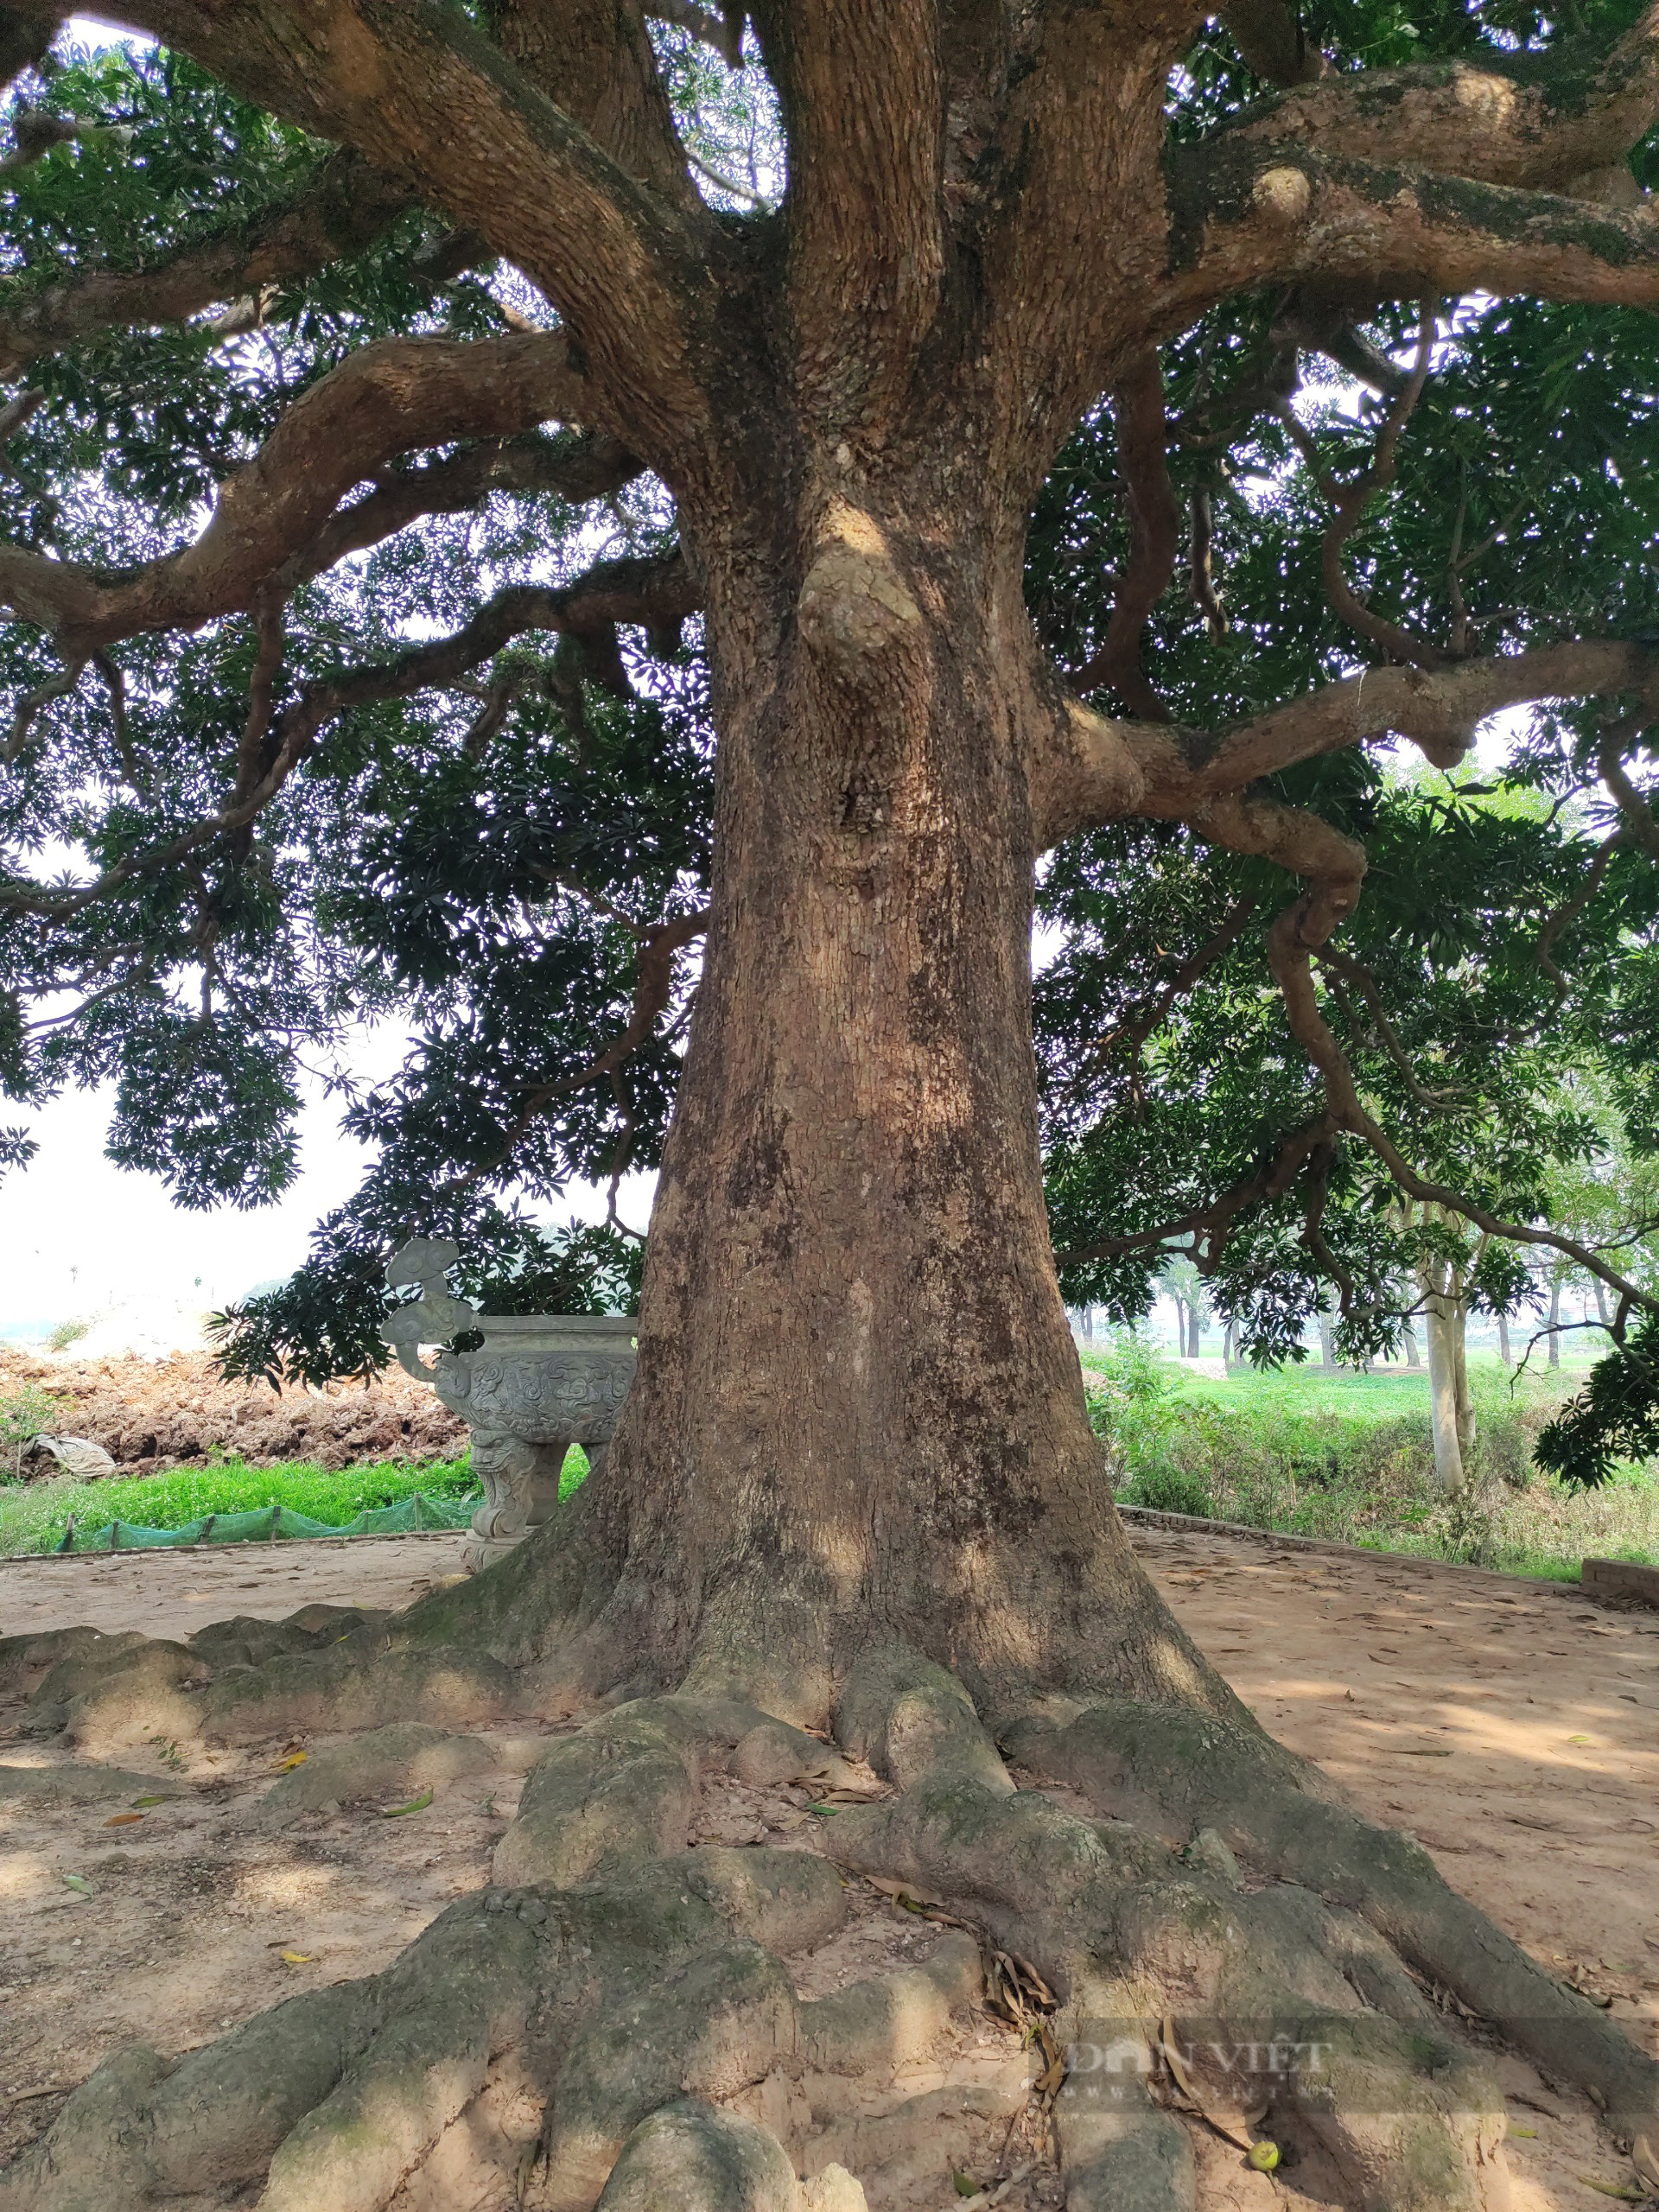 Cây trôi cổ thụ gần 800 năm tuổi sai trĩu quả ở Quốc Oai (Hà Nội) - Ảnh 6.